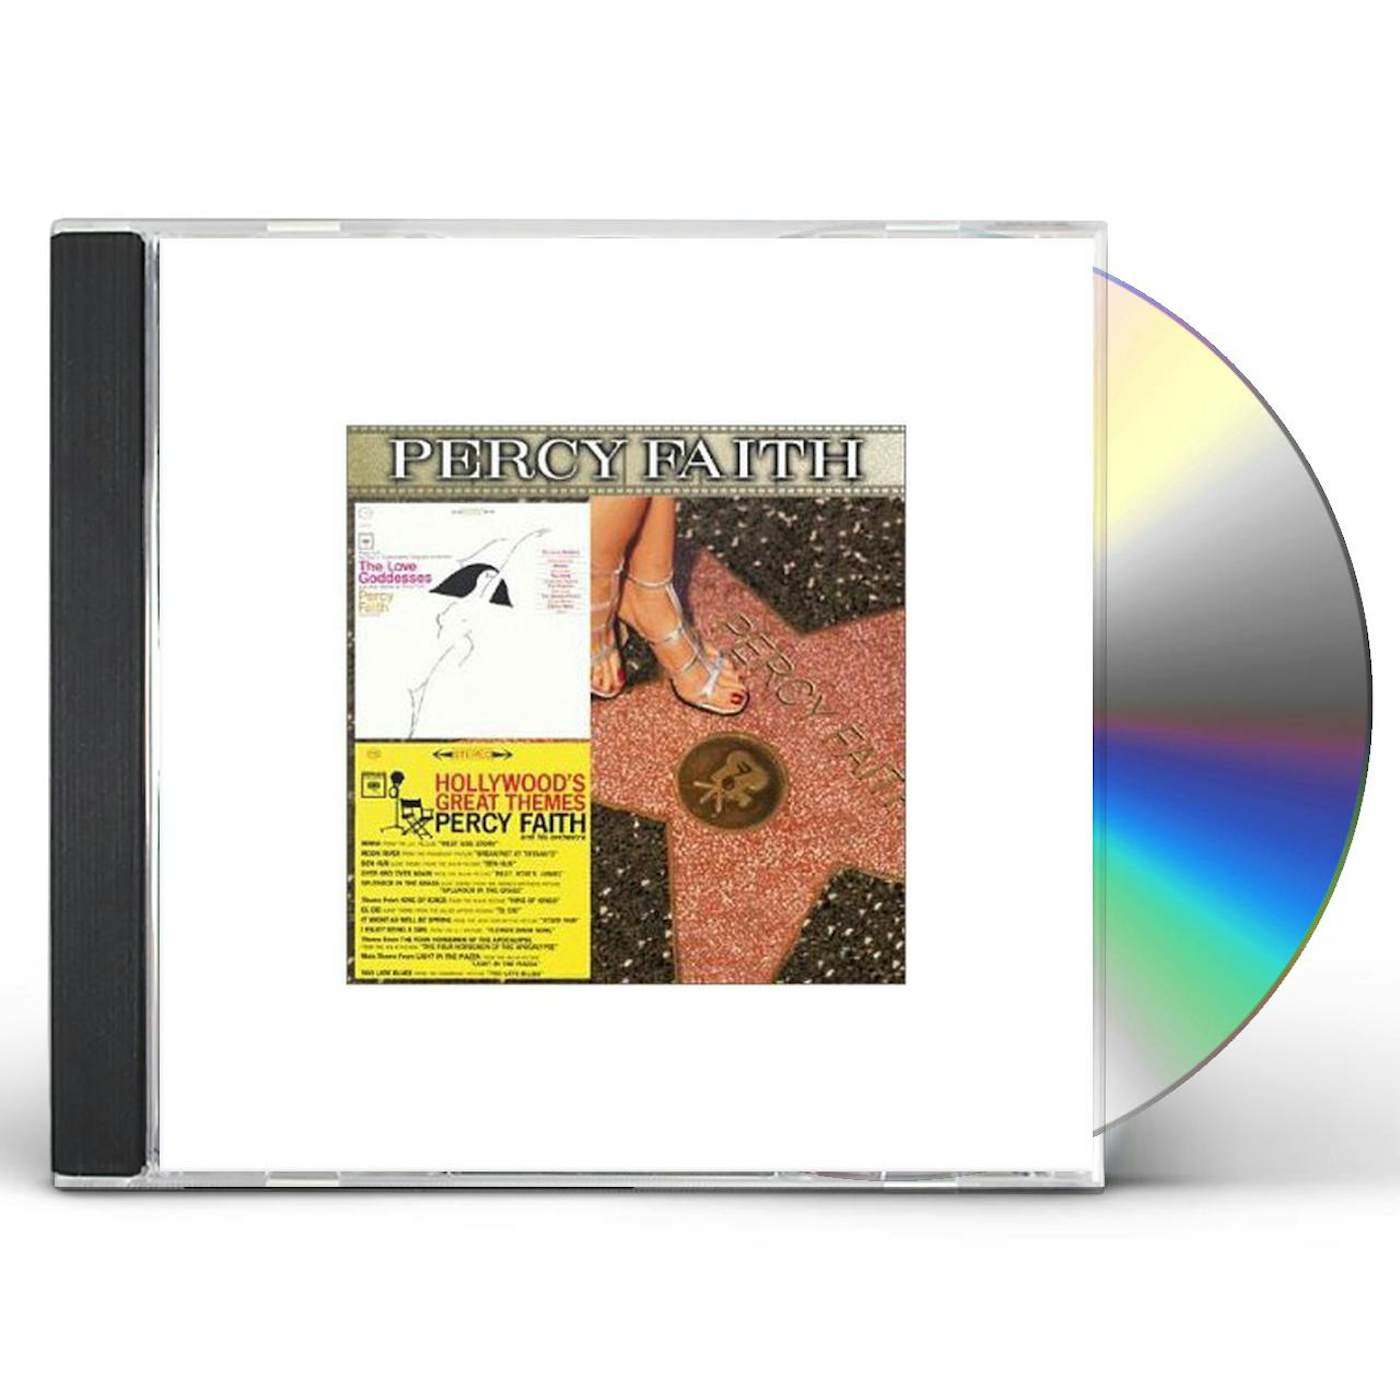 Percy Faith LOVE GODDESSES / HOLLYWOOD'S GREAT THEMES CD